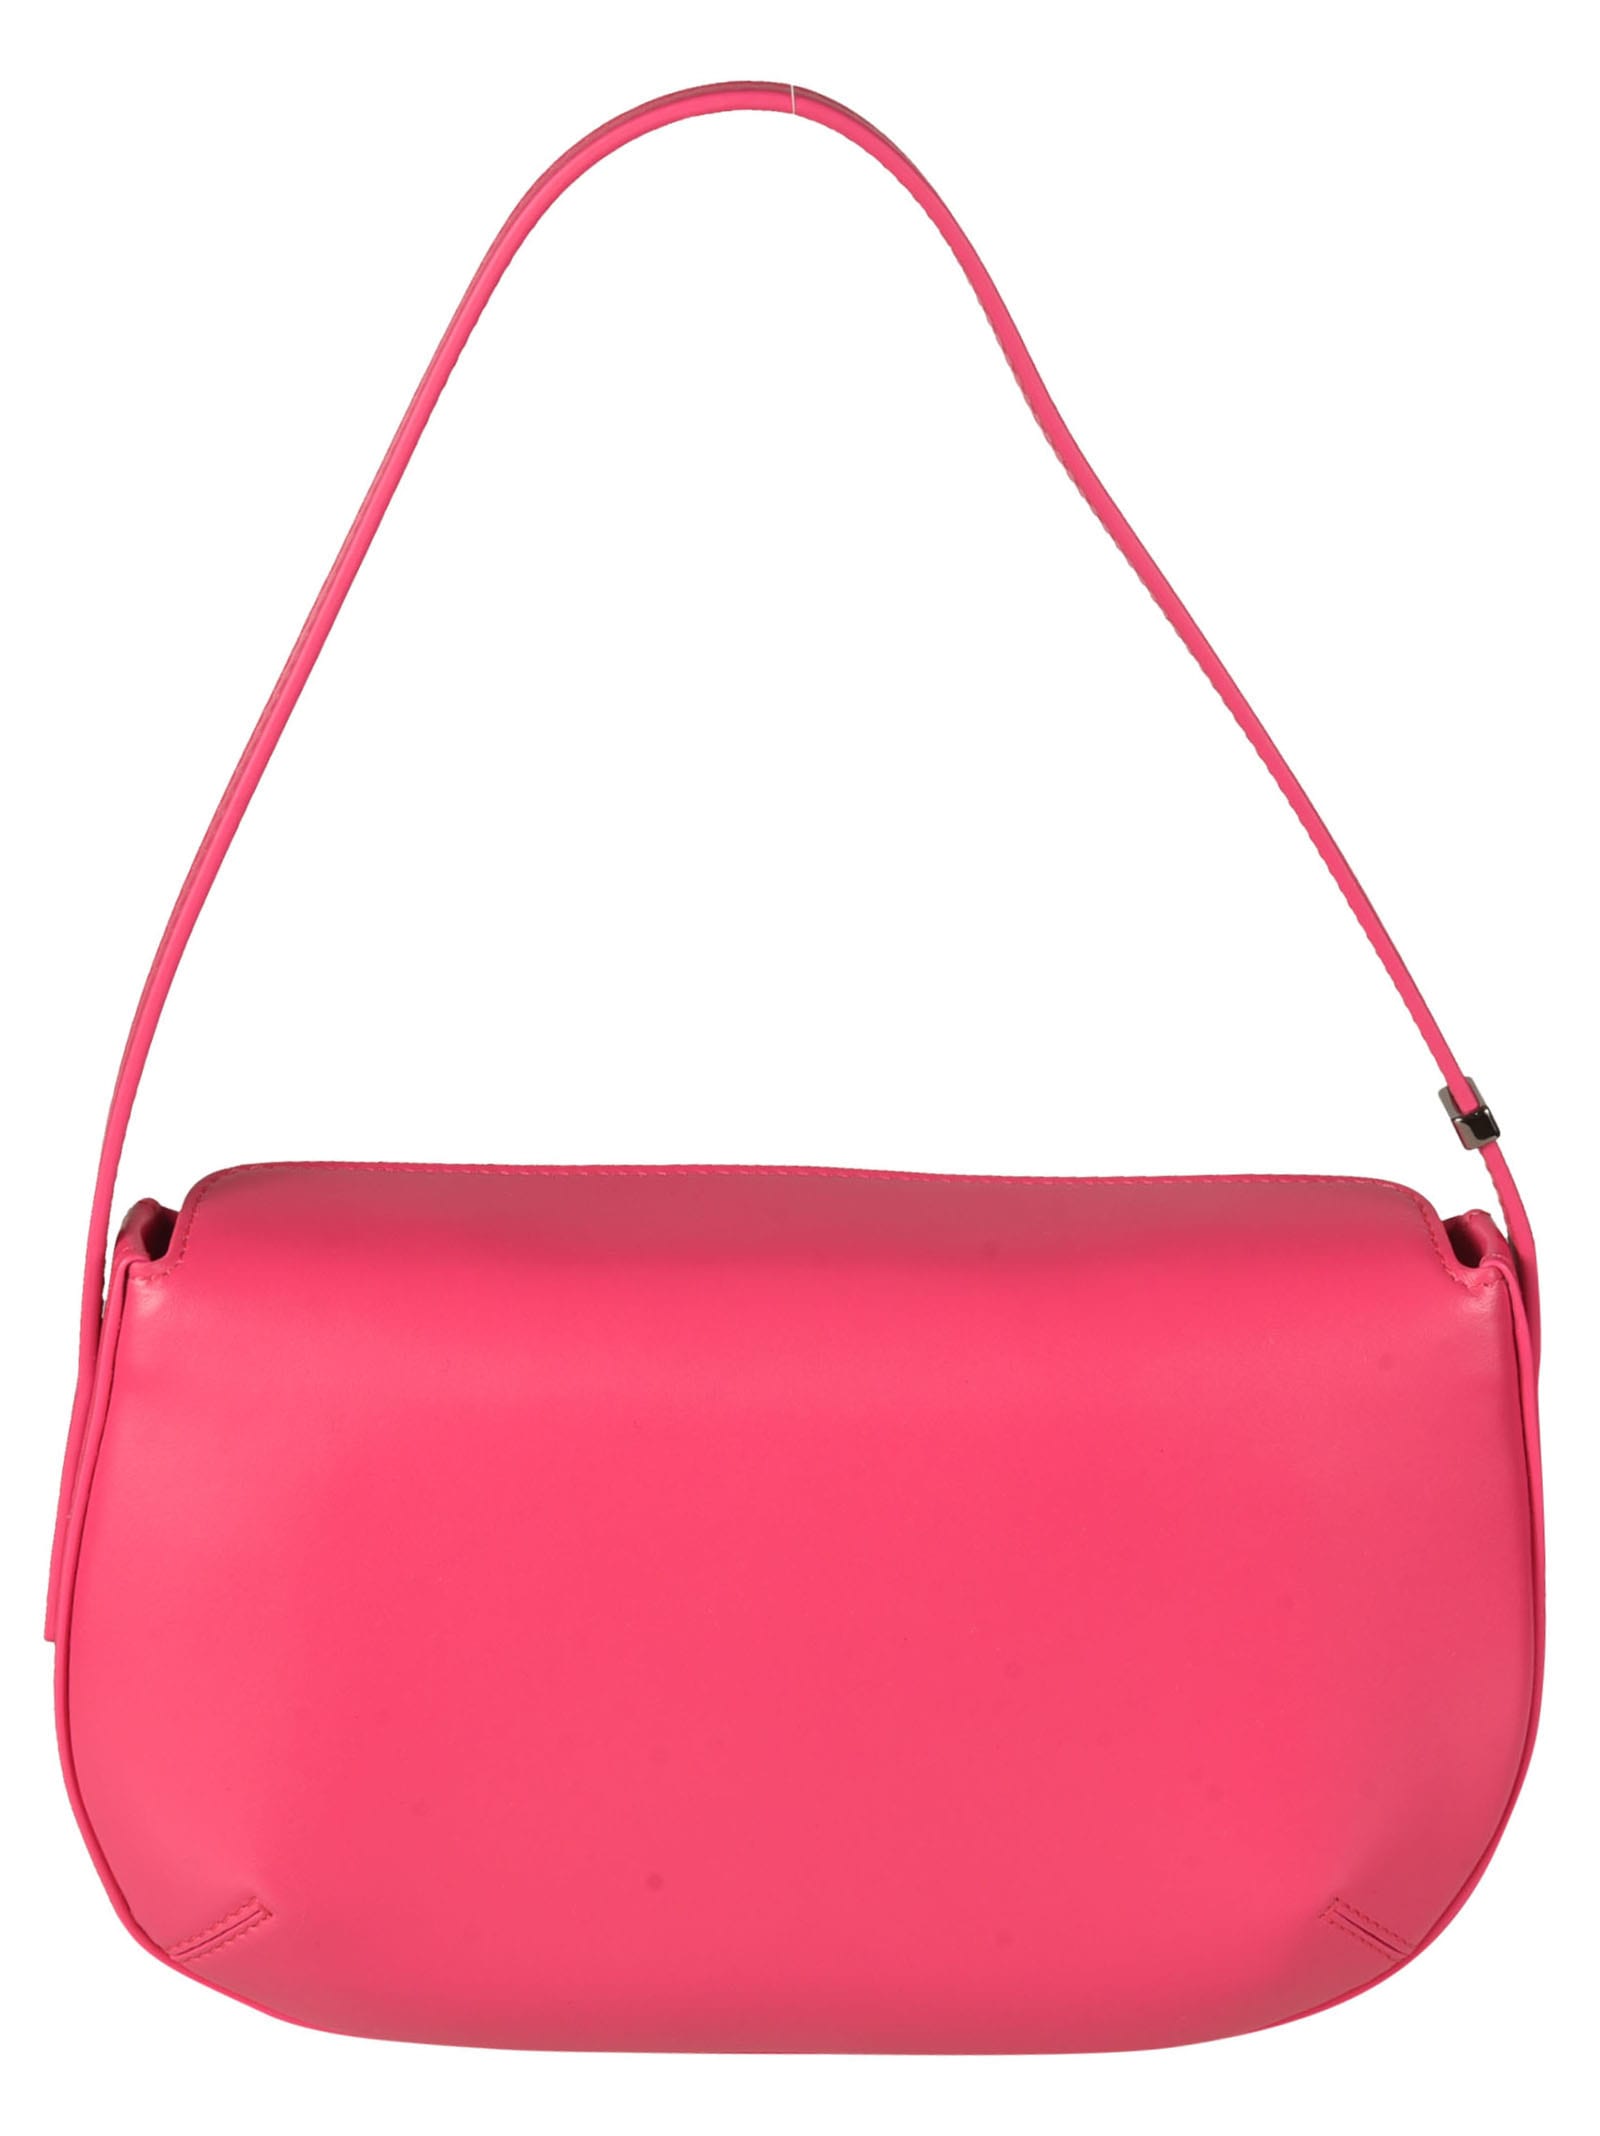 Giorgio Armani Ea Milano Fuchsia Crossbody Bag in Pink